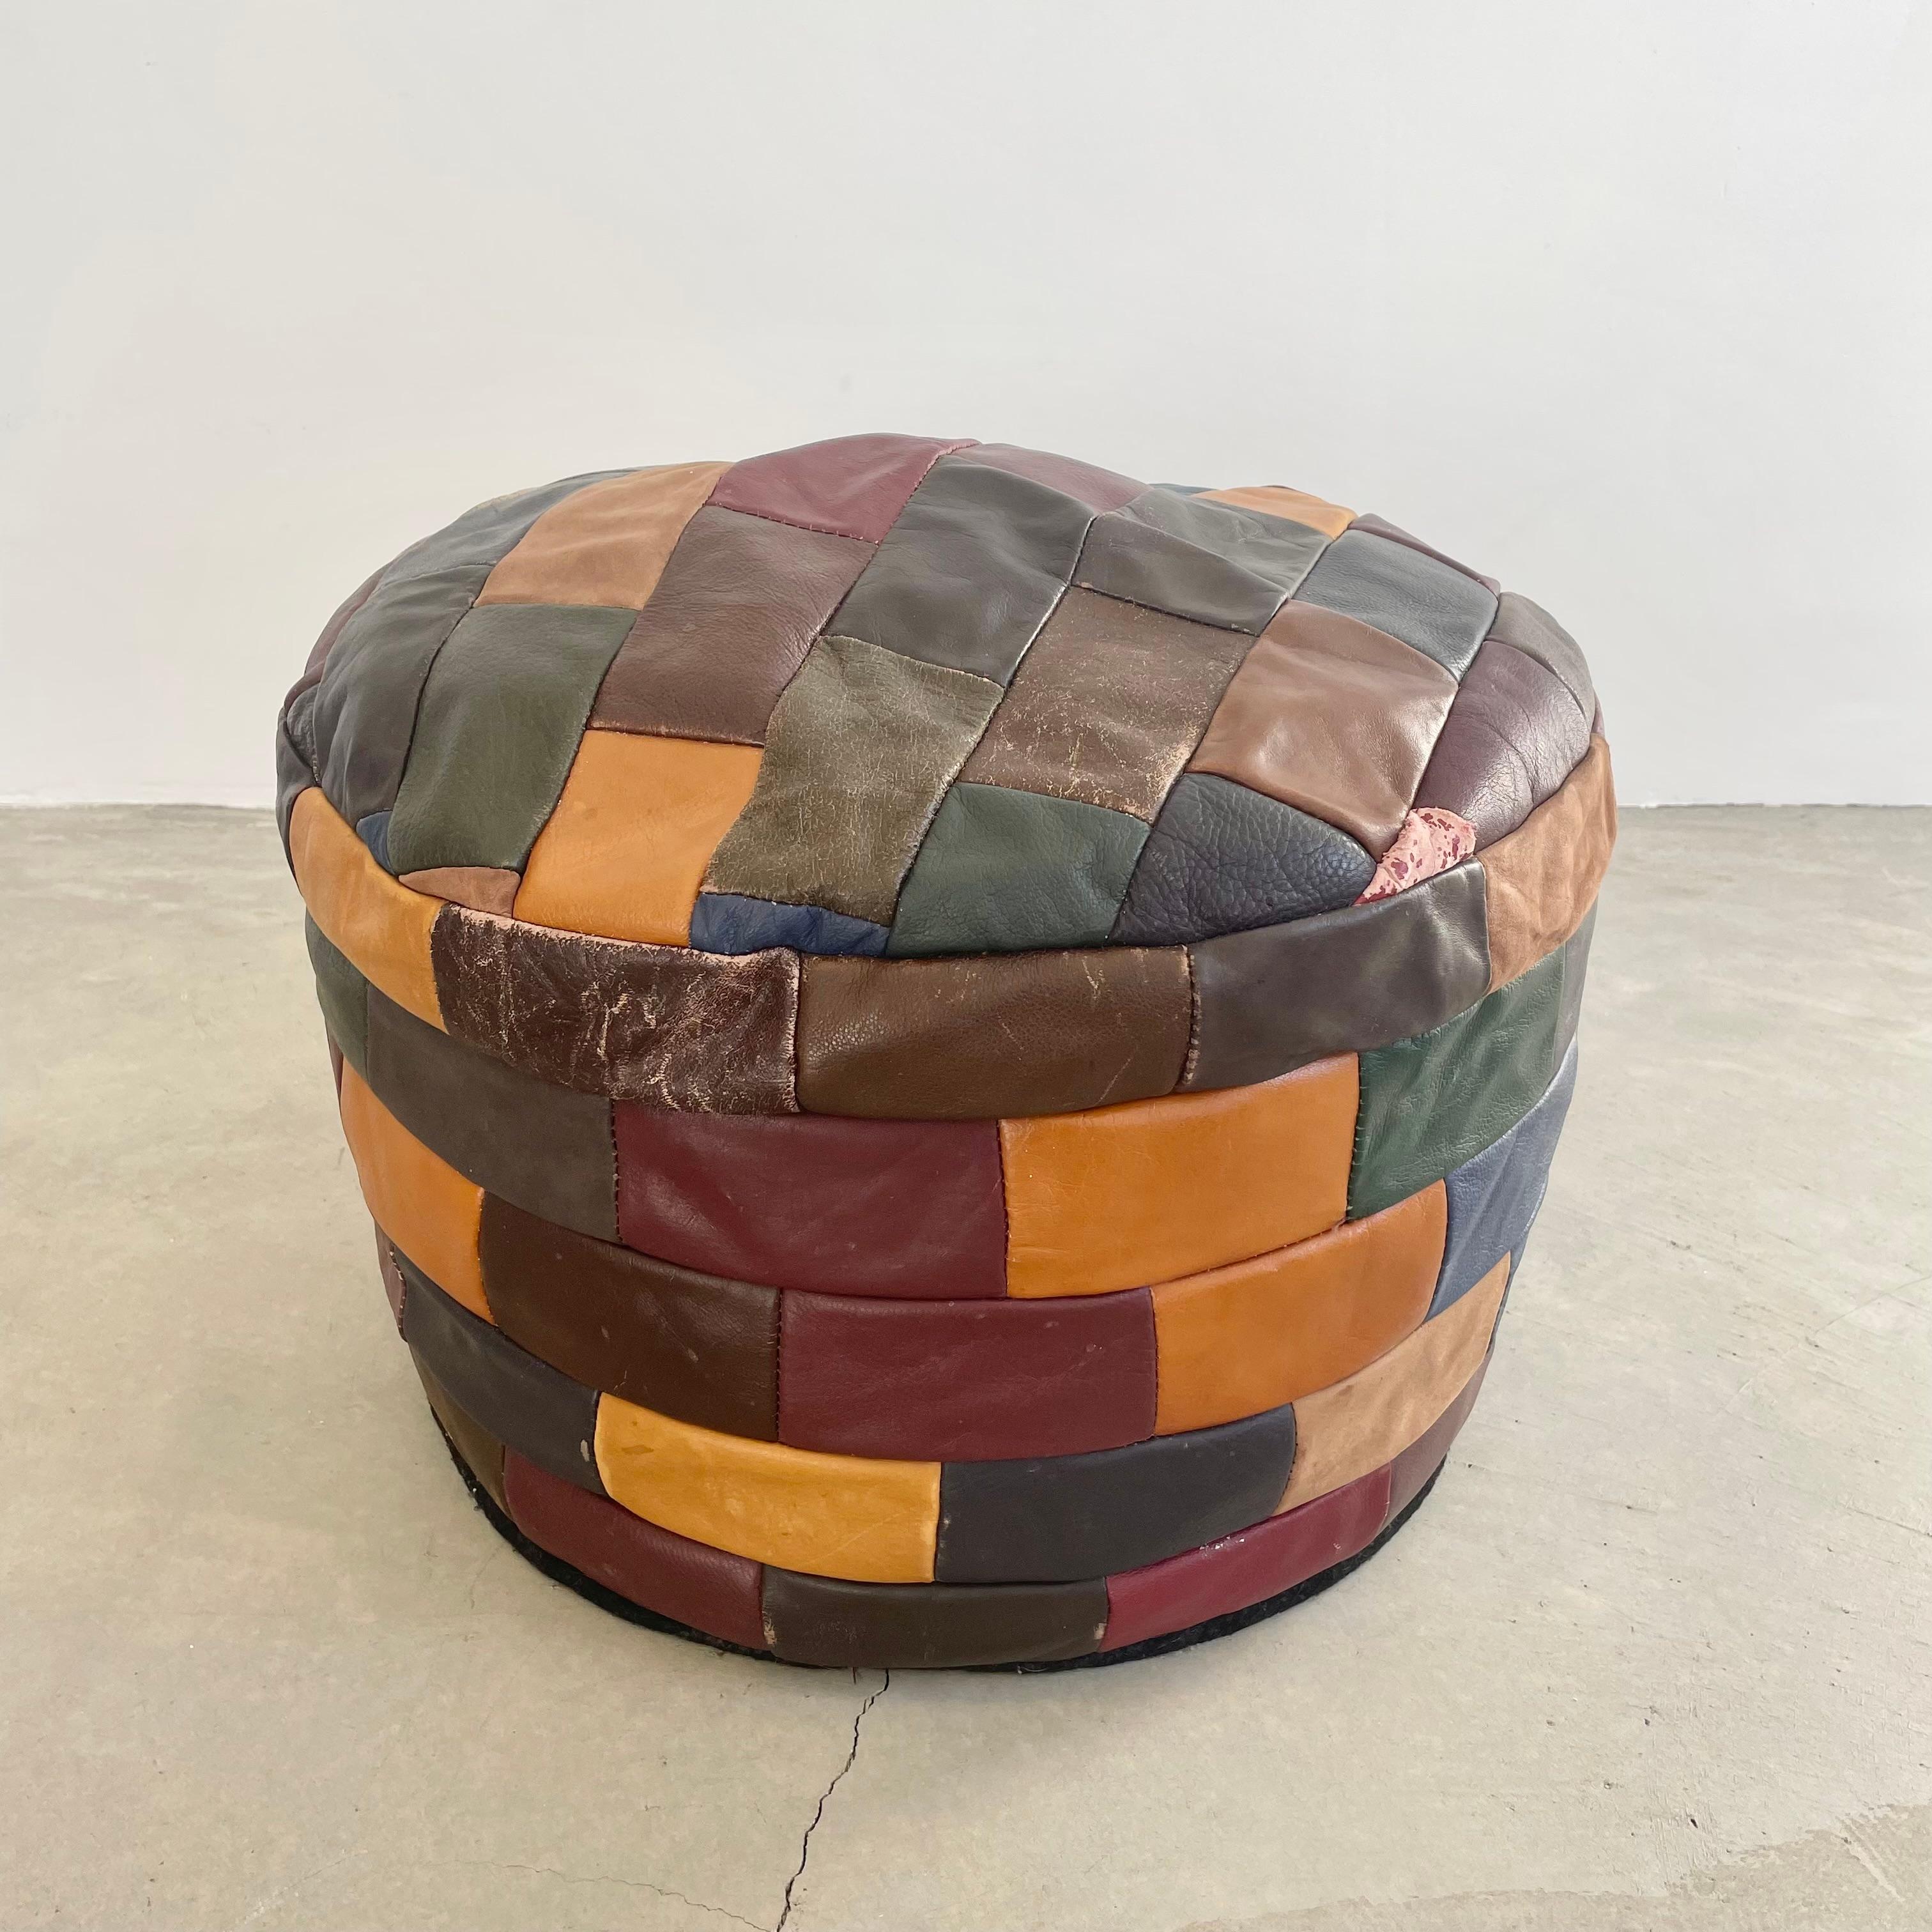 Magnifique pouf/ottoman en cuir multicolore du designer suisse De Sede avec patchwork carré. Fabriqué à la main avec une magnifique patine délavée de différents degrés de rouge, de vert, de brun, de tan, de bleu et de violet. Le design et les